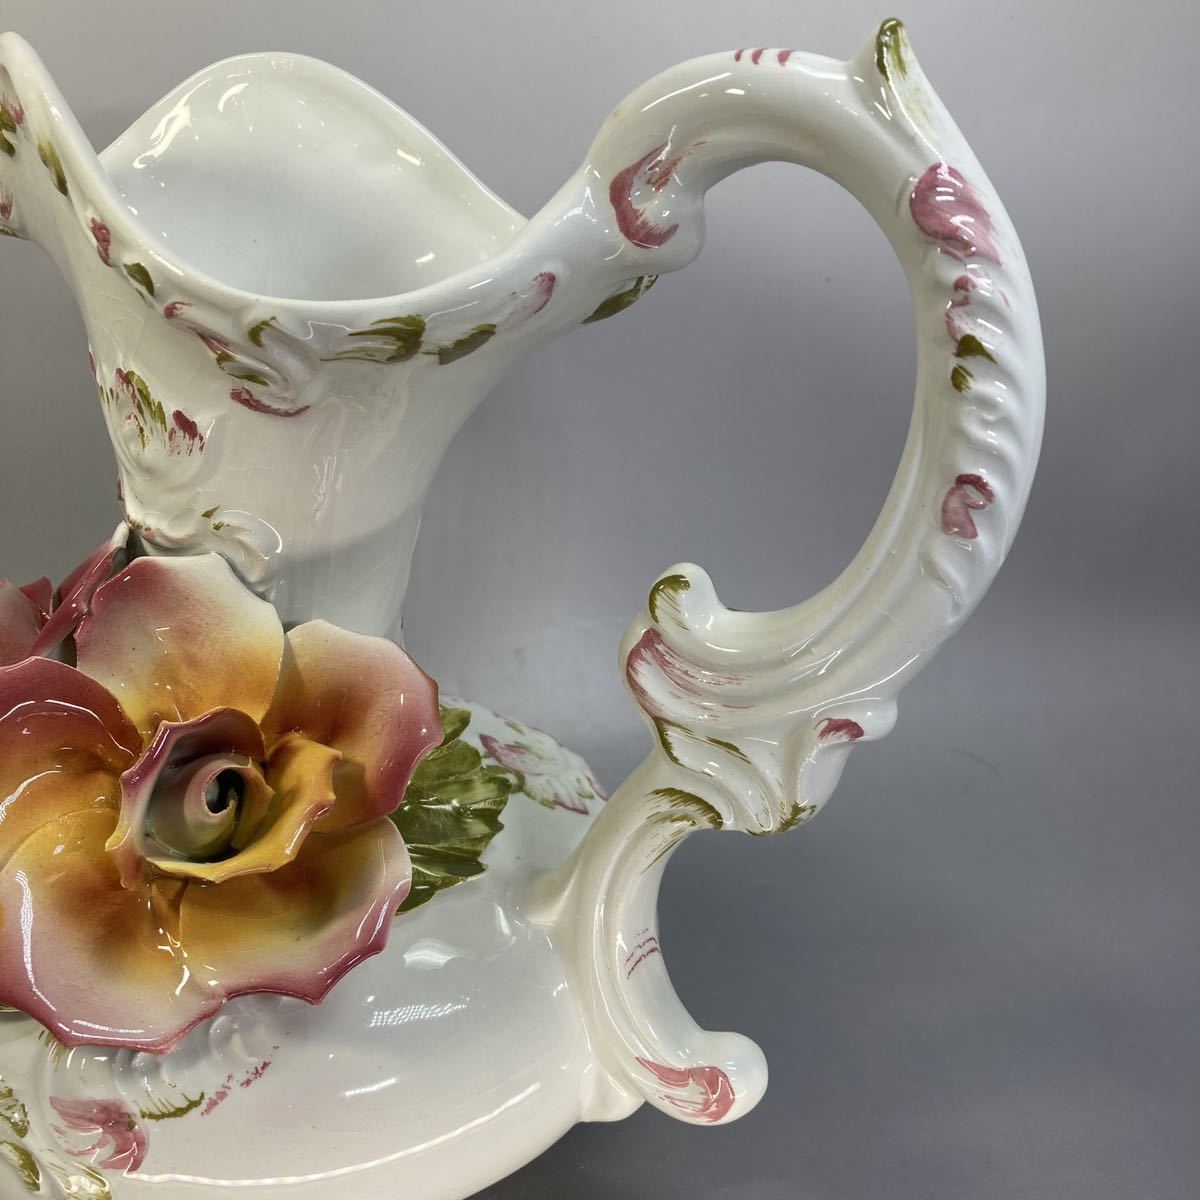 Demain ドマン ITALY イタリア製 薔薇 フラワーベース ピッチャー 花瓶 